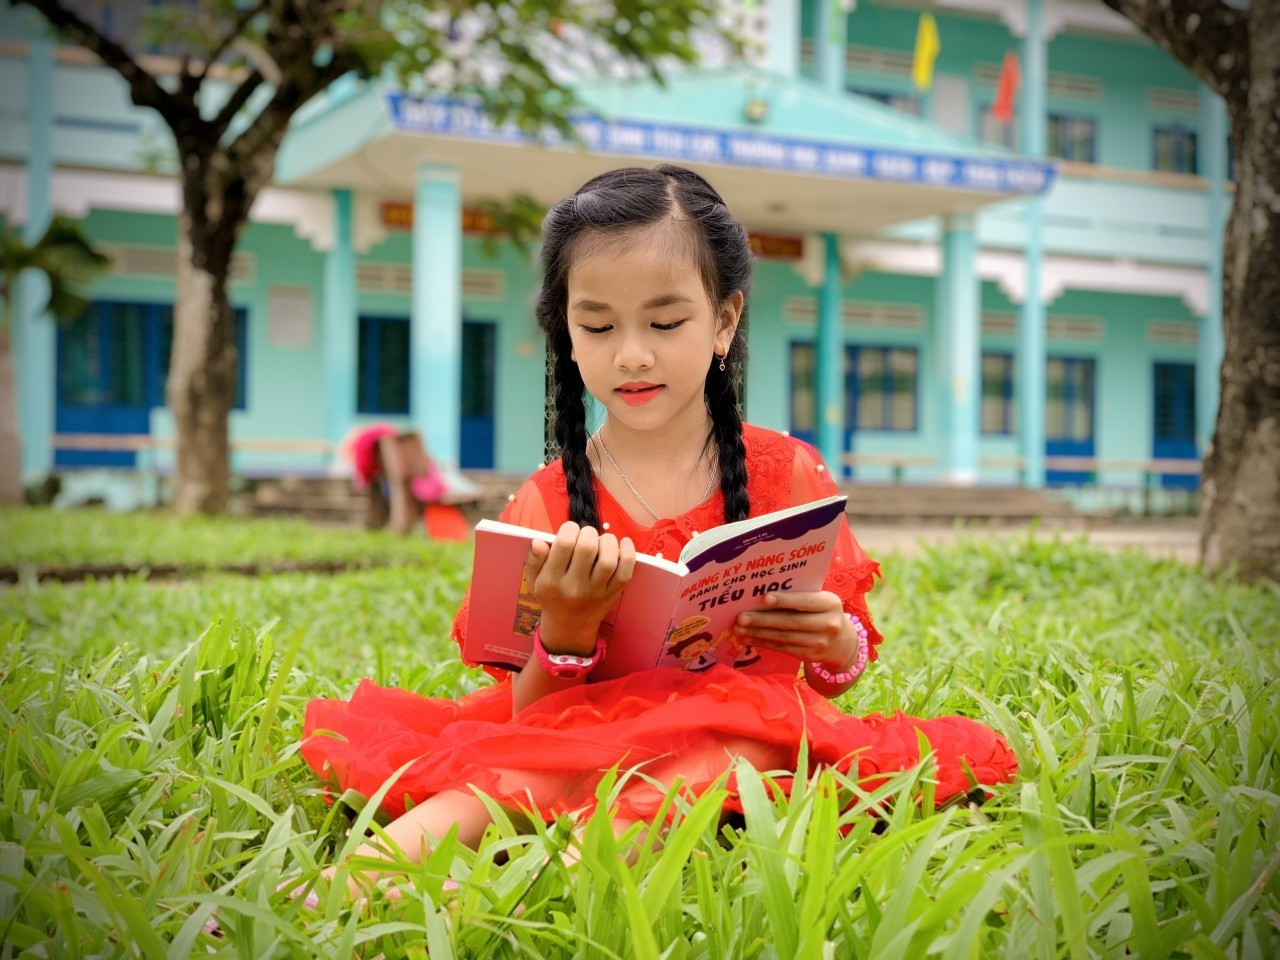 Mô hình thư viện thân thiện ở Nông Sơn, tạo cho học sinh thói quen đọc sách. Ảnh; T.T